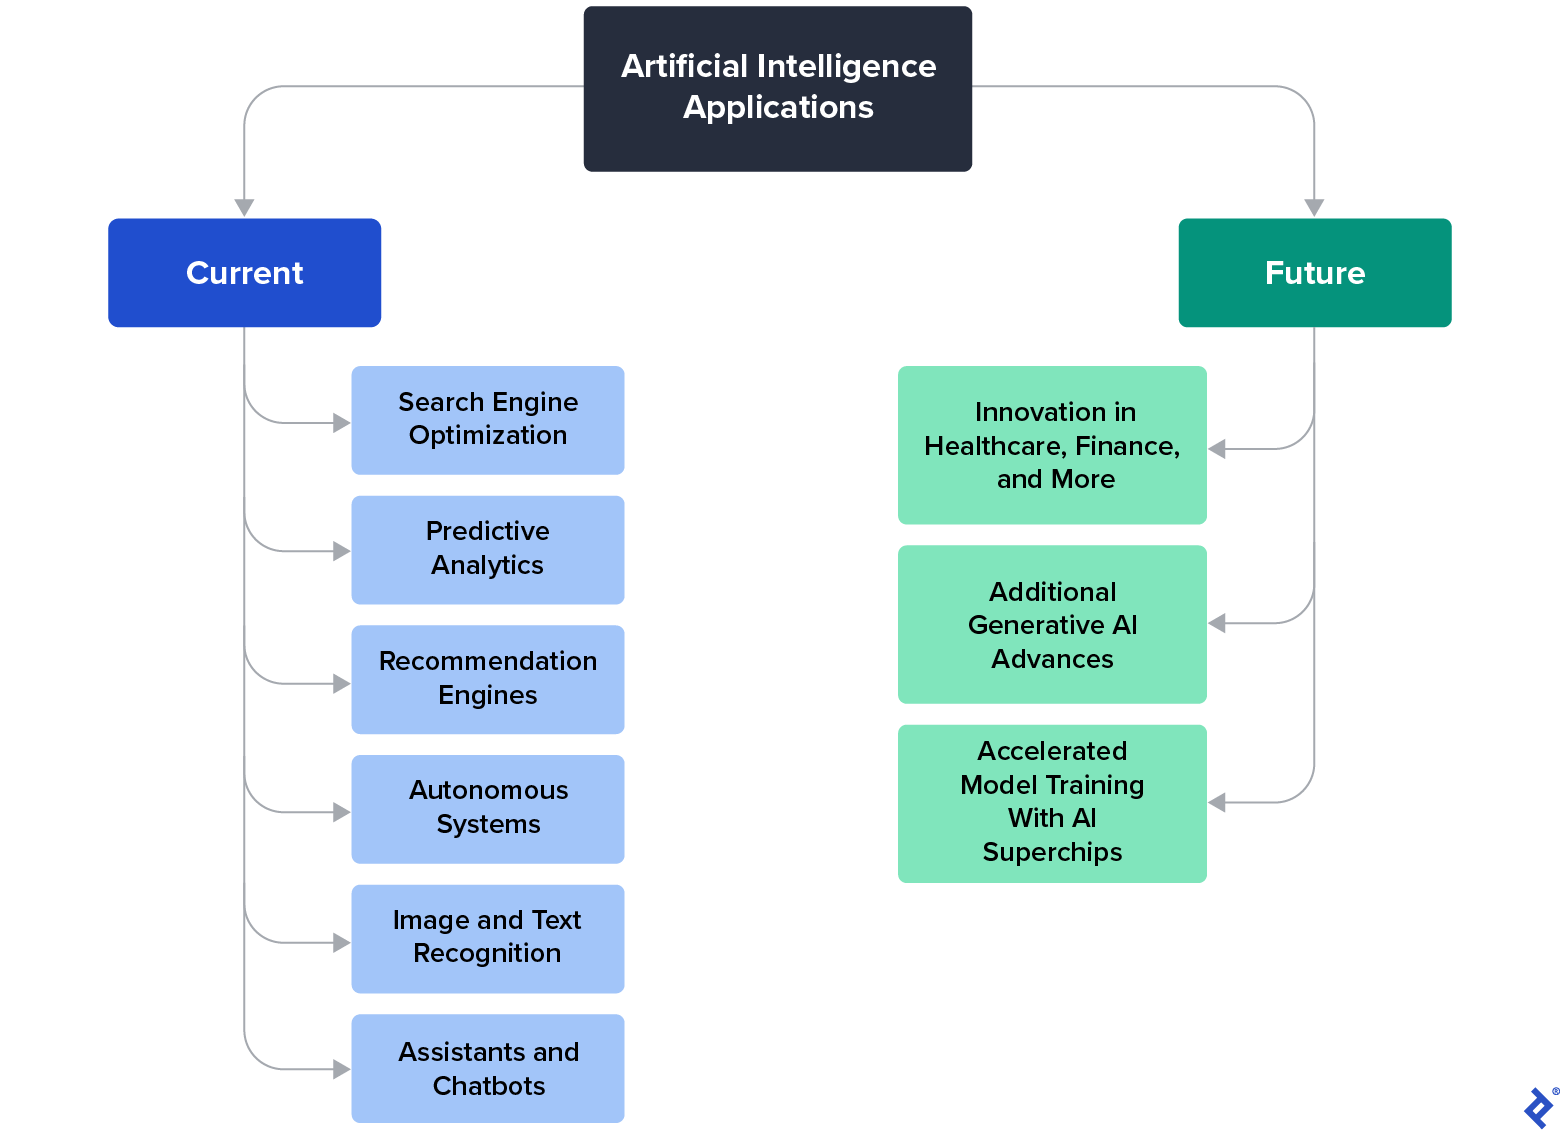 Un tableau des applications actuelles de l'IA, telles que le référencement et les chatbots, et des applications futures, telles que l'innovation dans le domaine des soins de santé et les avancées de l'IA générative.